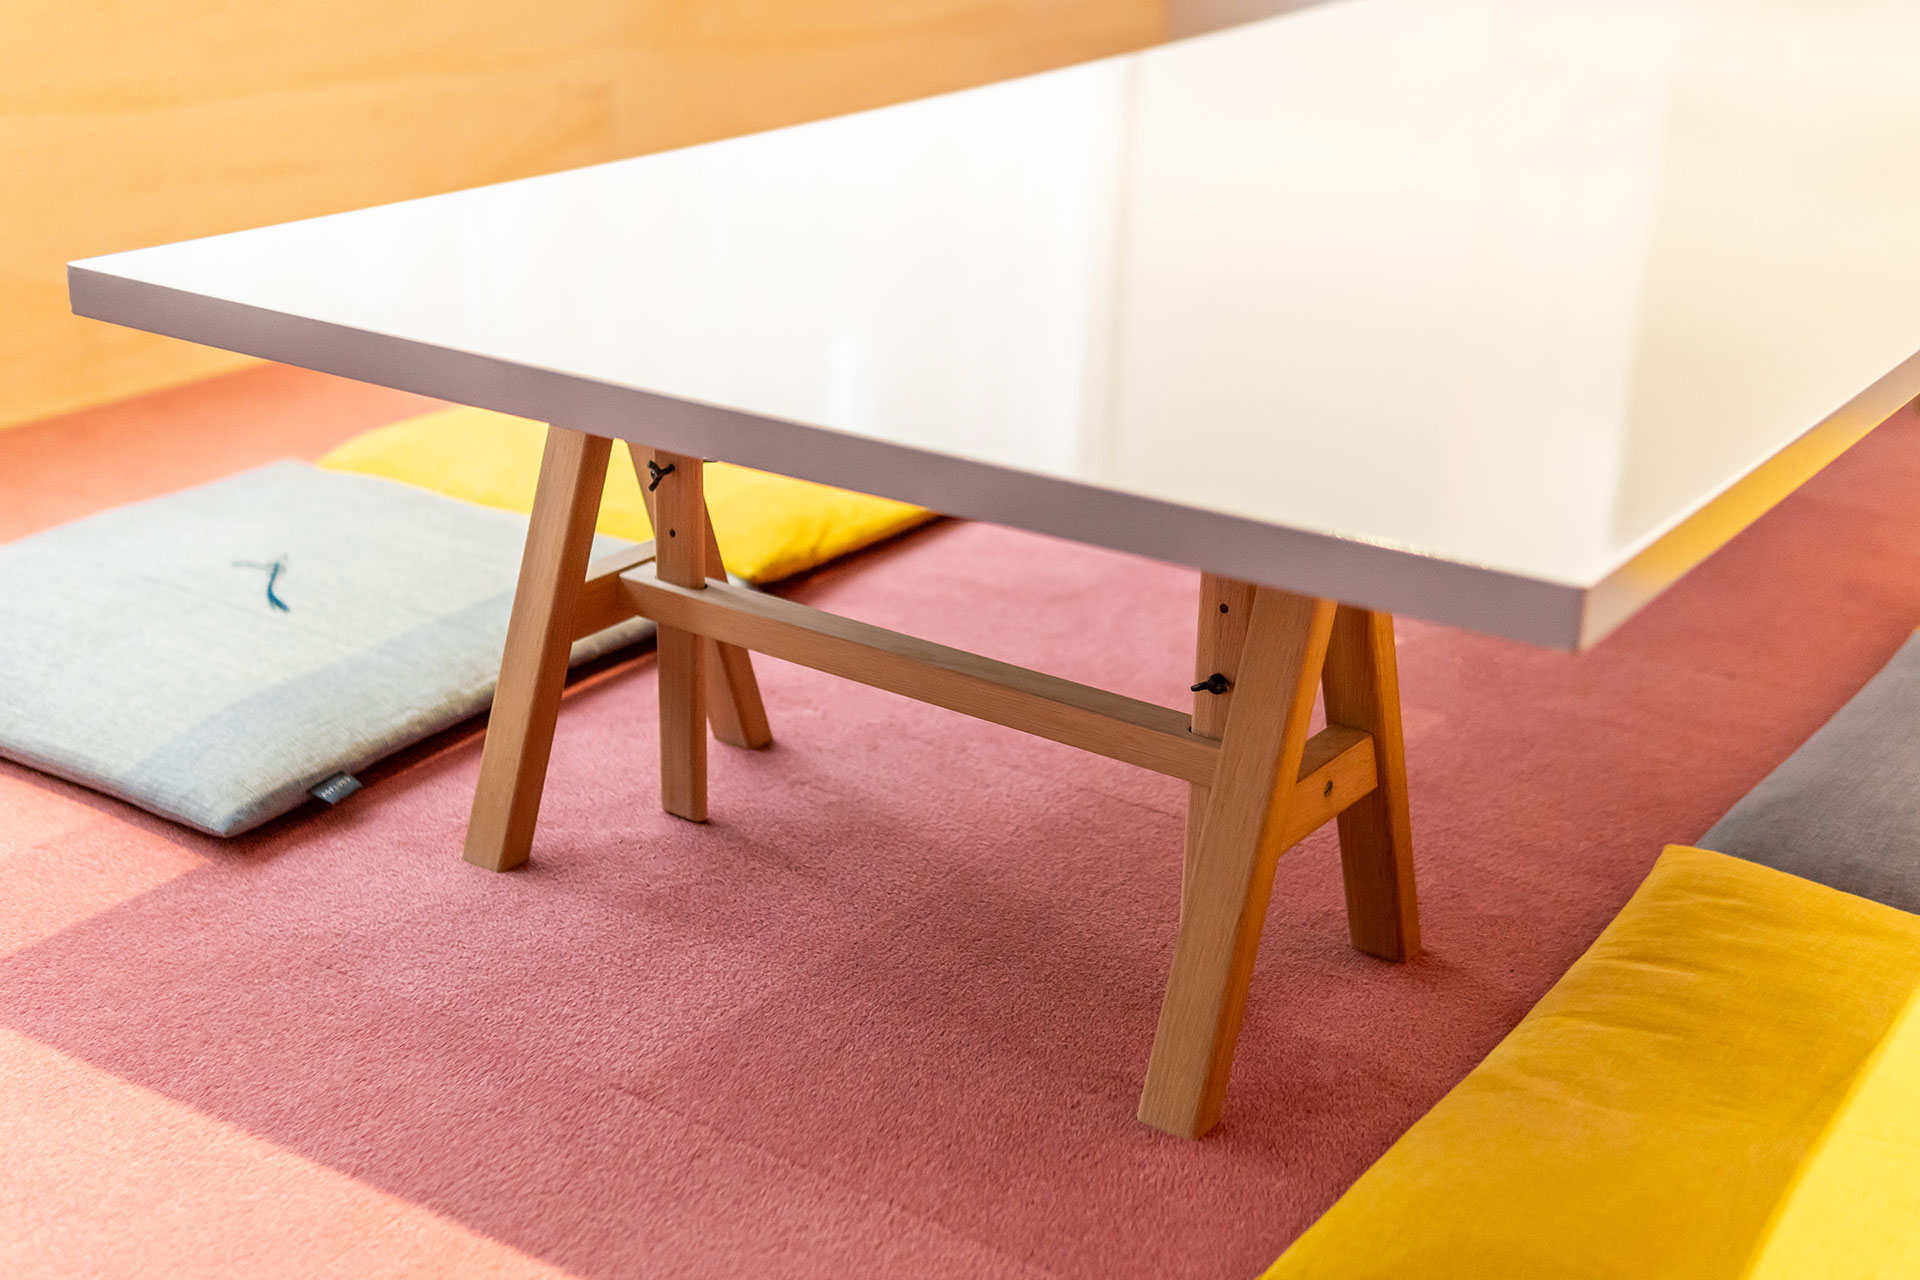 アンティークの蹴とばしプレス機から考案した造作テーブル。脚の形状が特徴的。天板はウレタン塗装。